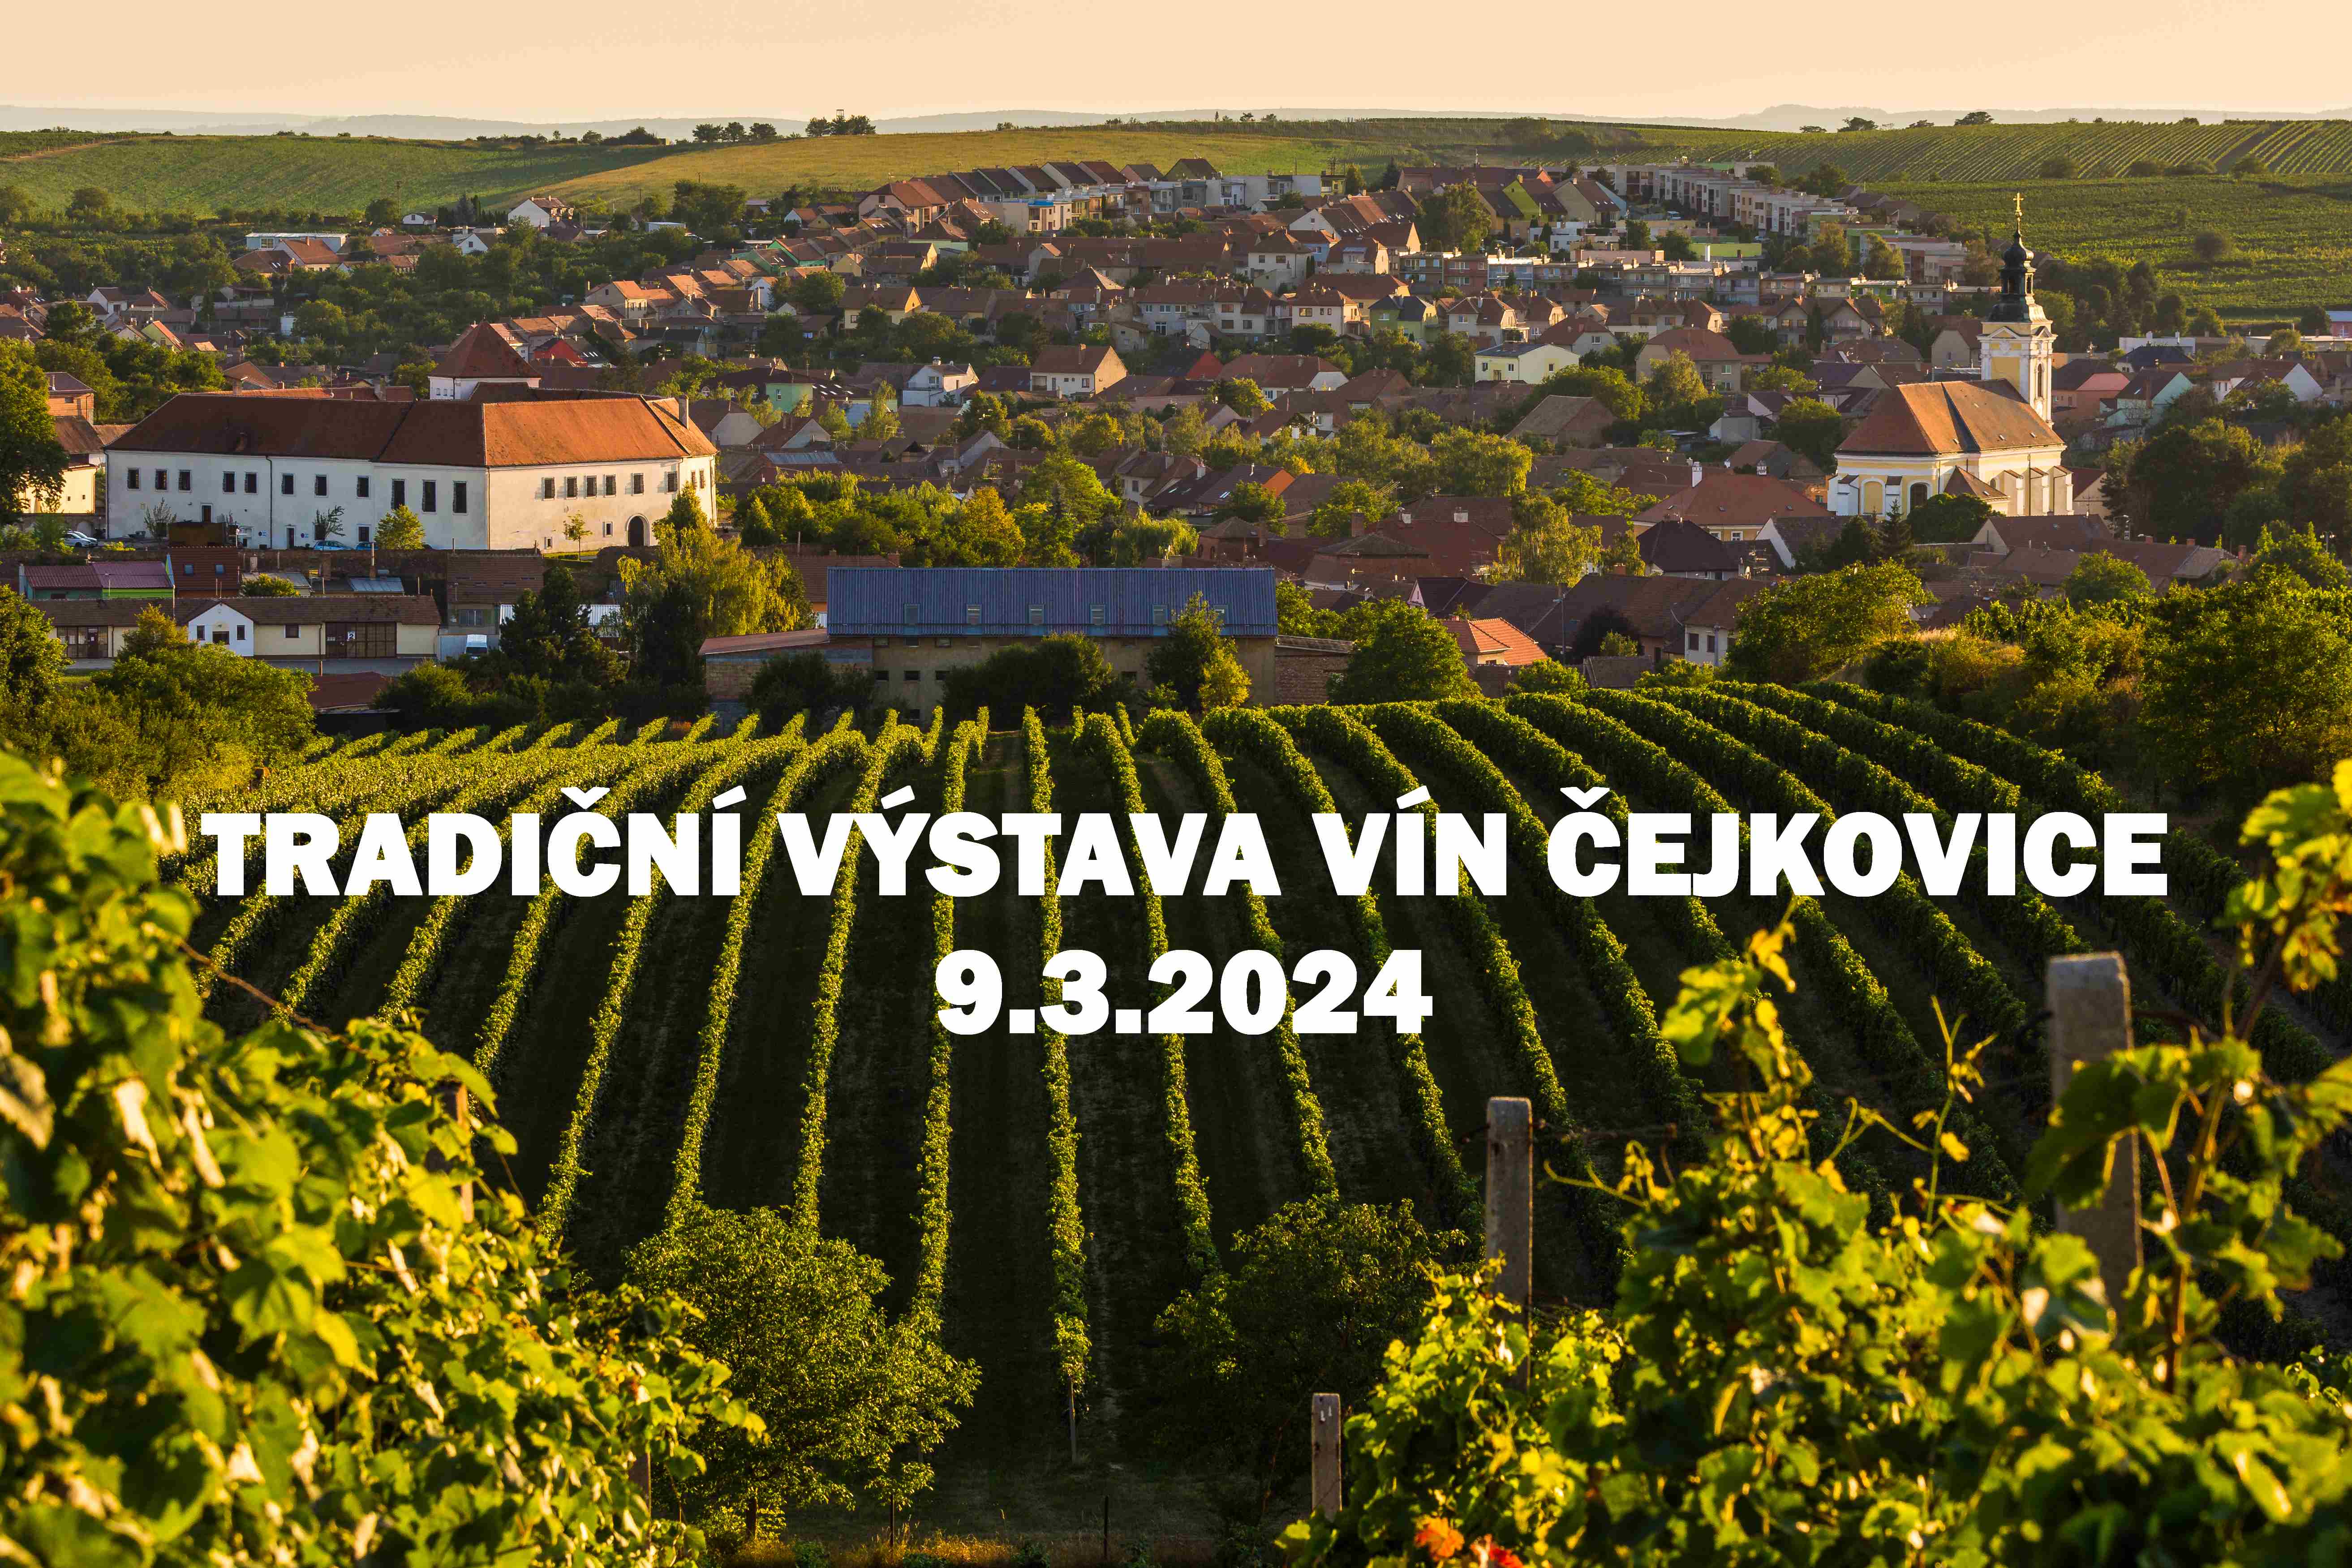 Tradiční výstava vín Čejkovice | Čejkovice (okres Hodonín) | 9. 3. 2024